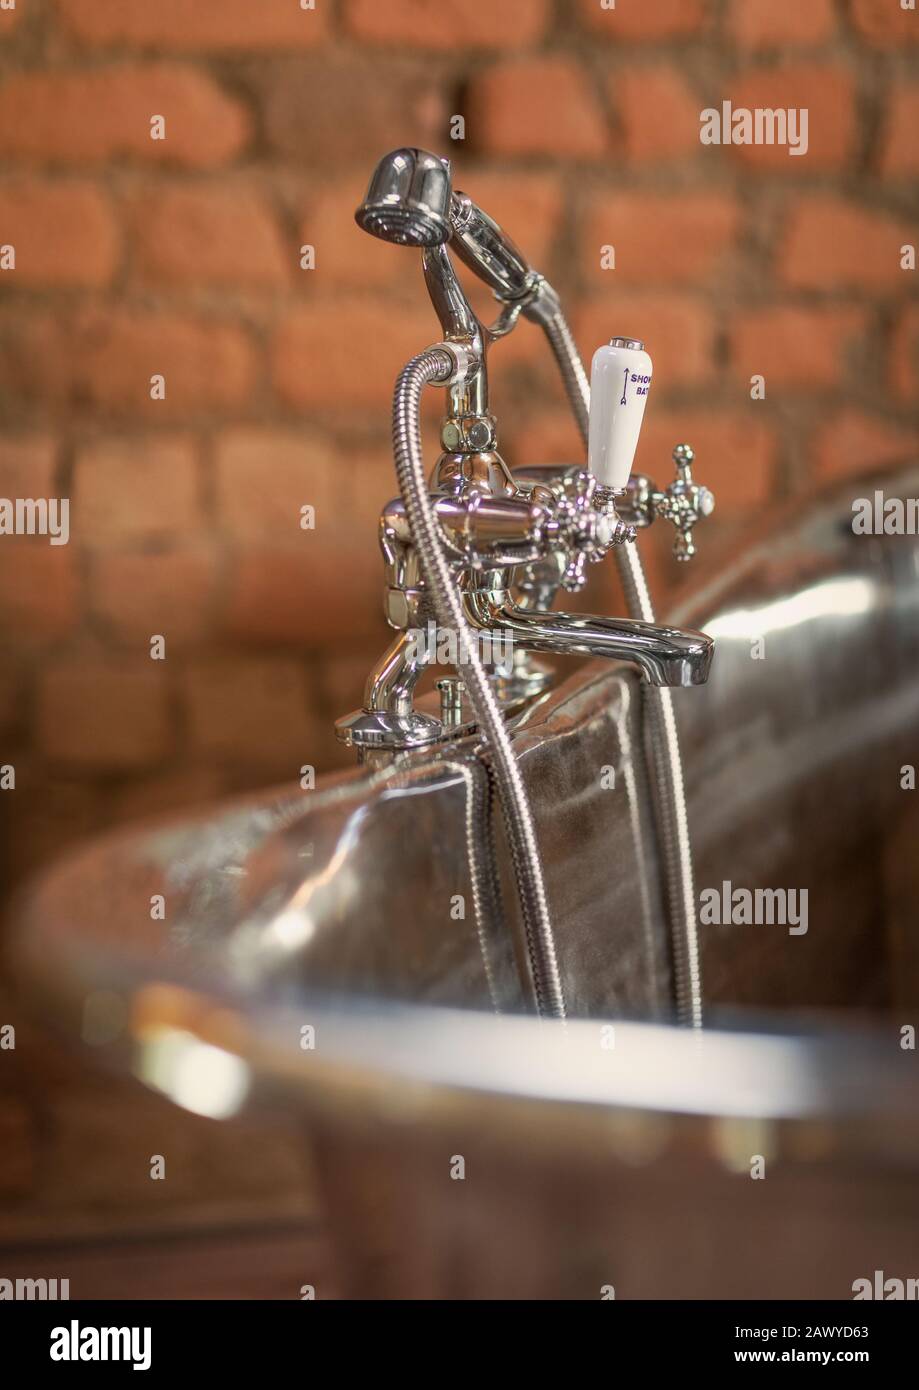 Home vetrina interni in acciaio inox rubinetto vasca immersione Foto Stock